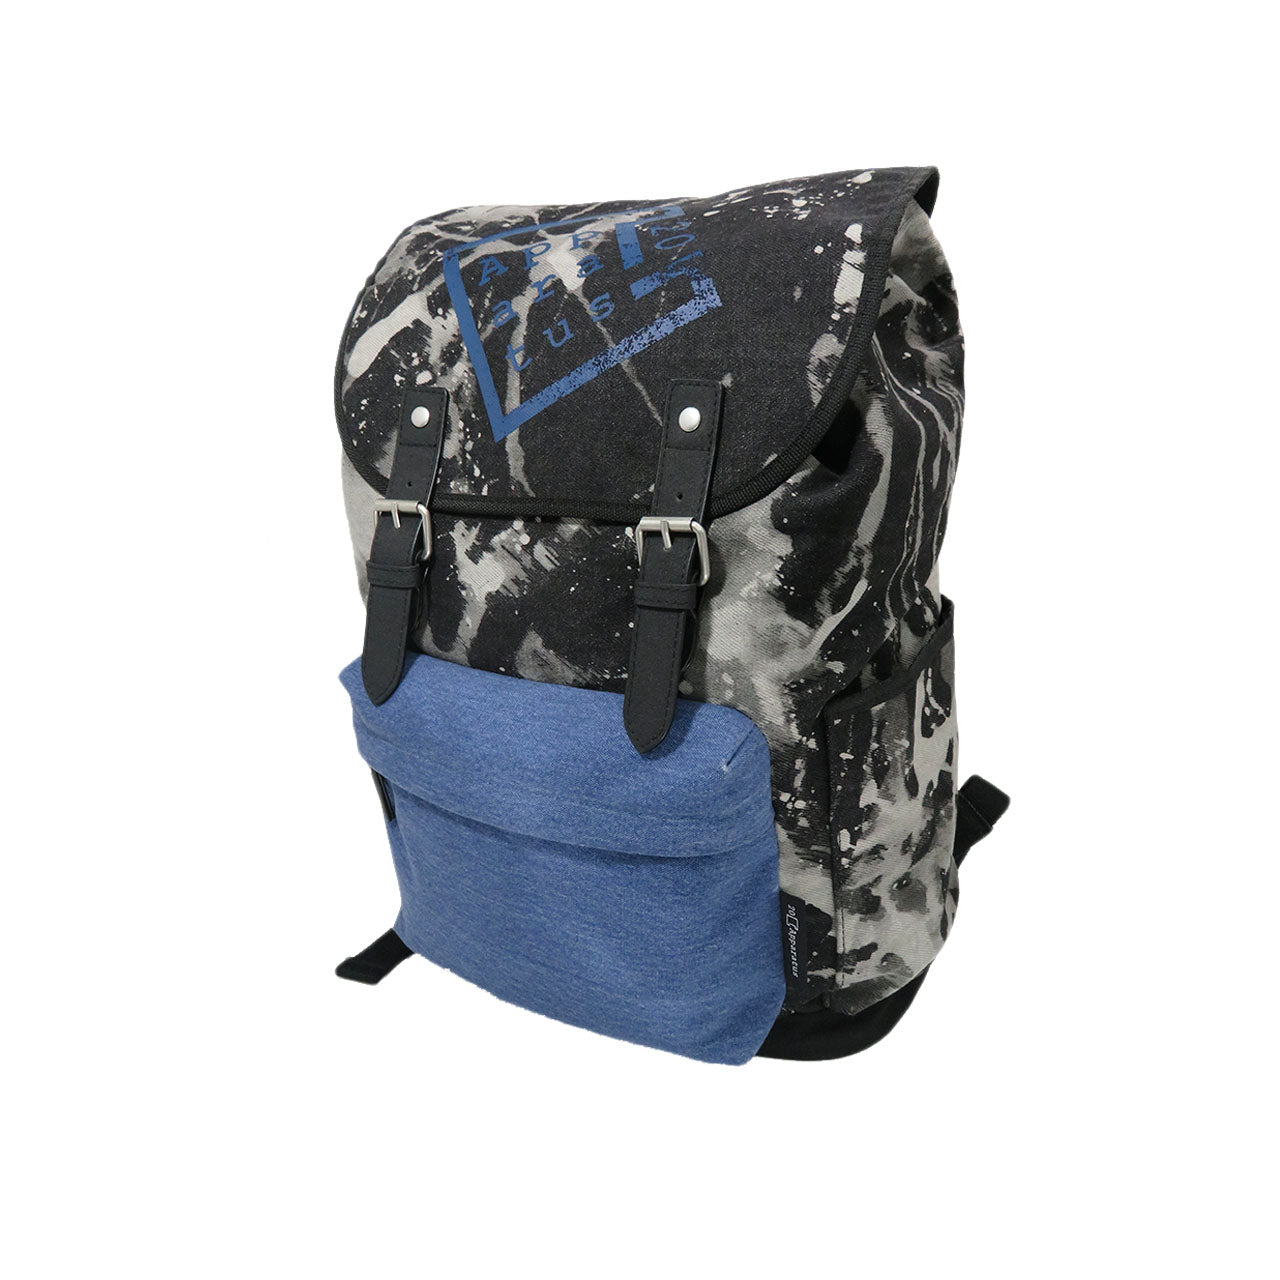 Denim - Flapover Backpack